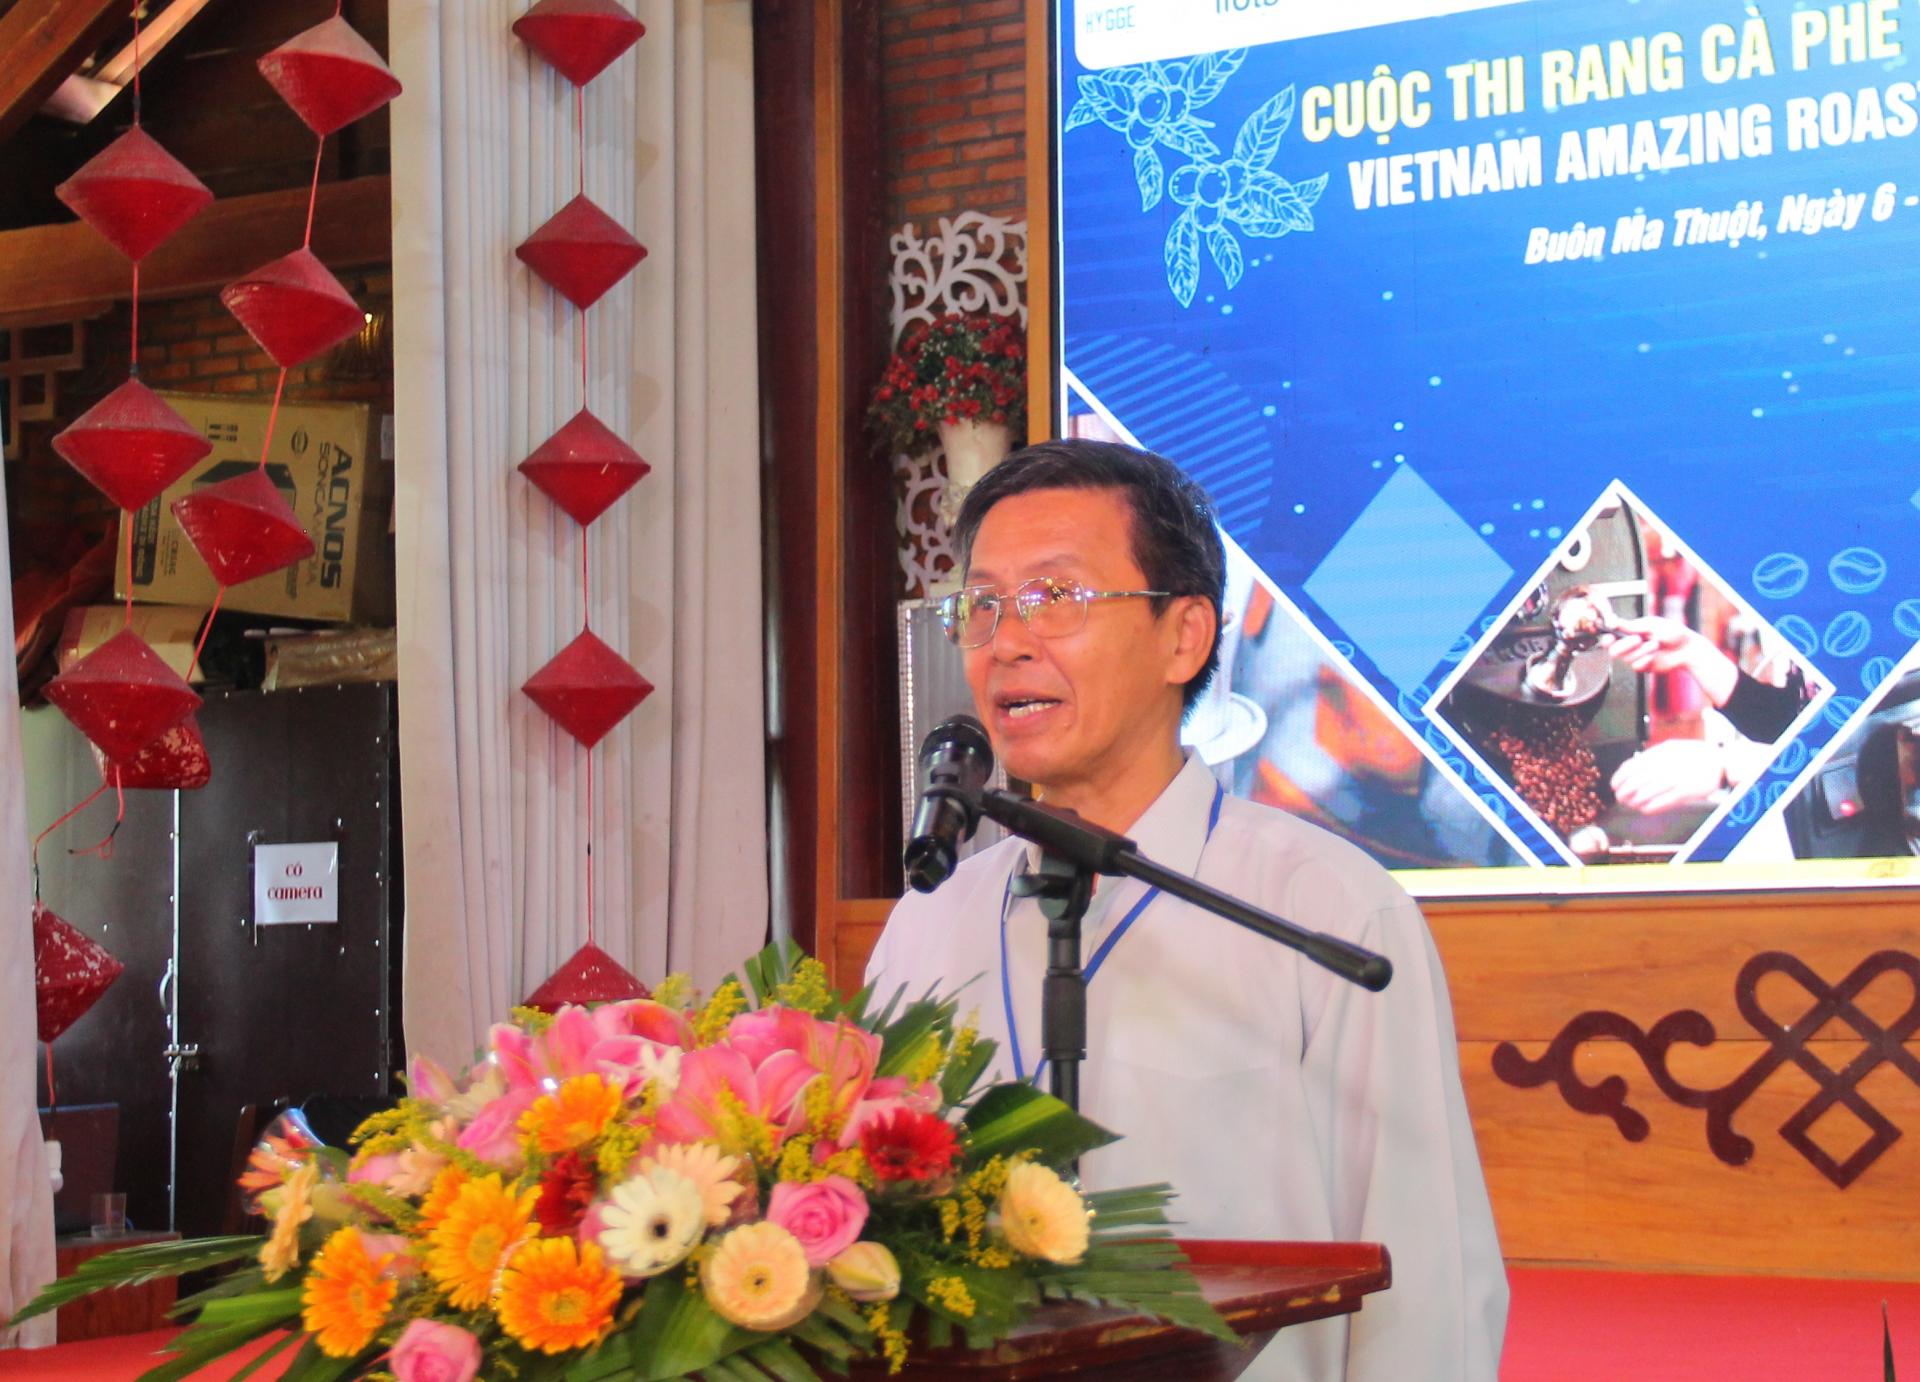 Đắk Lắk: Khai mạc Cuộc thi Rang cà phê Việt Nam 2022